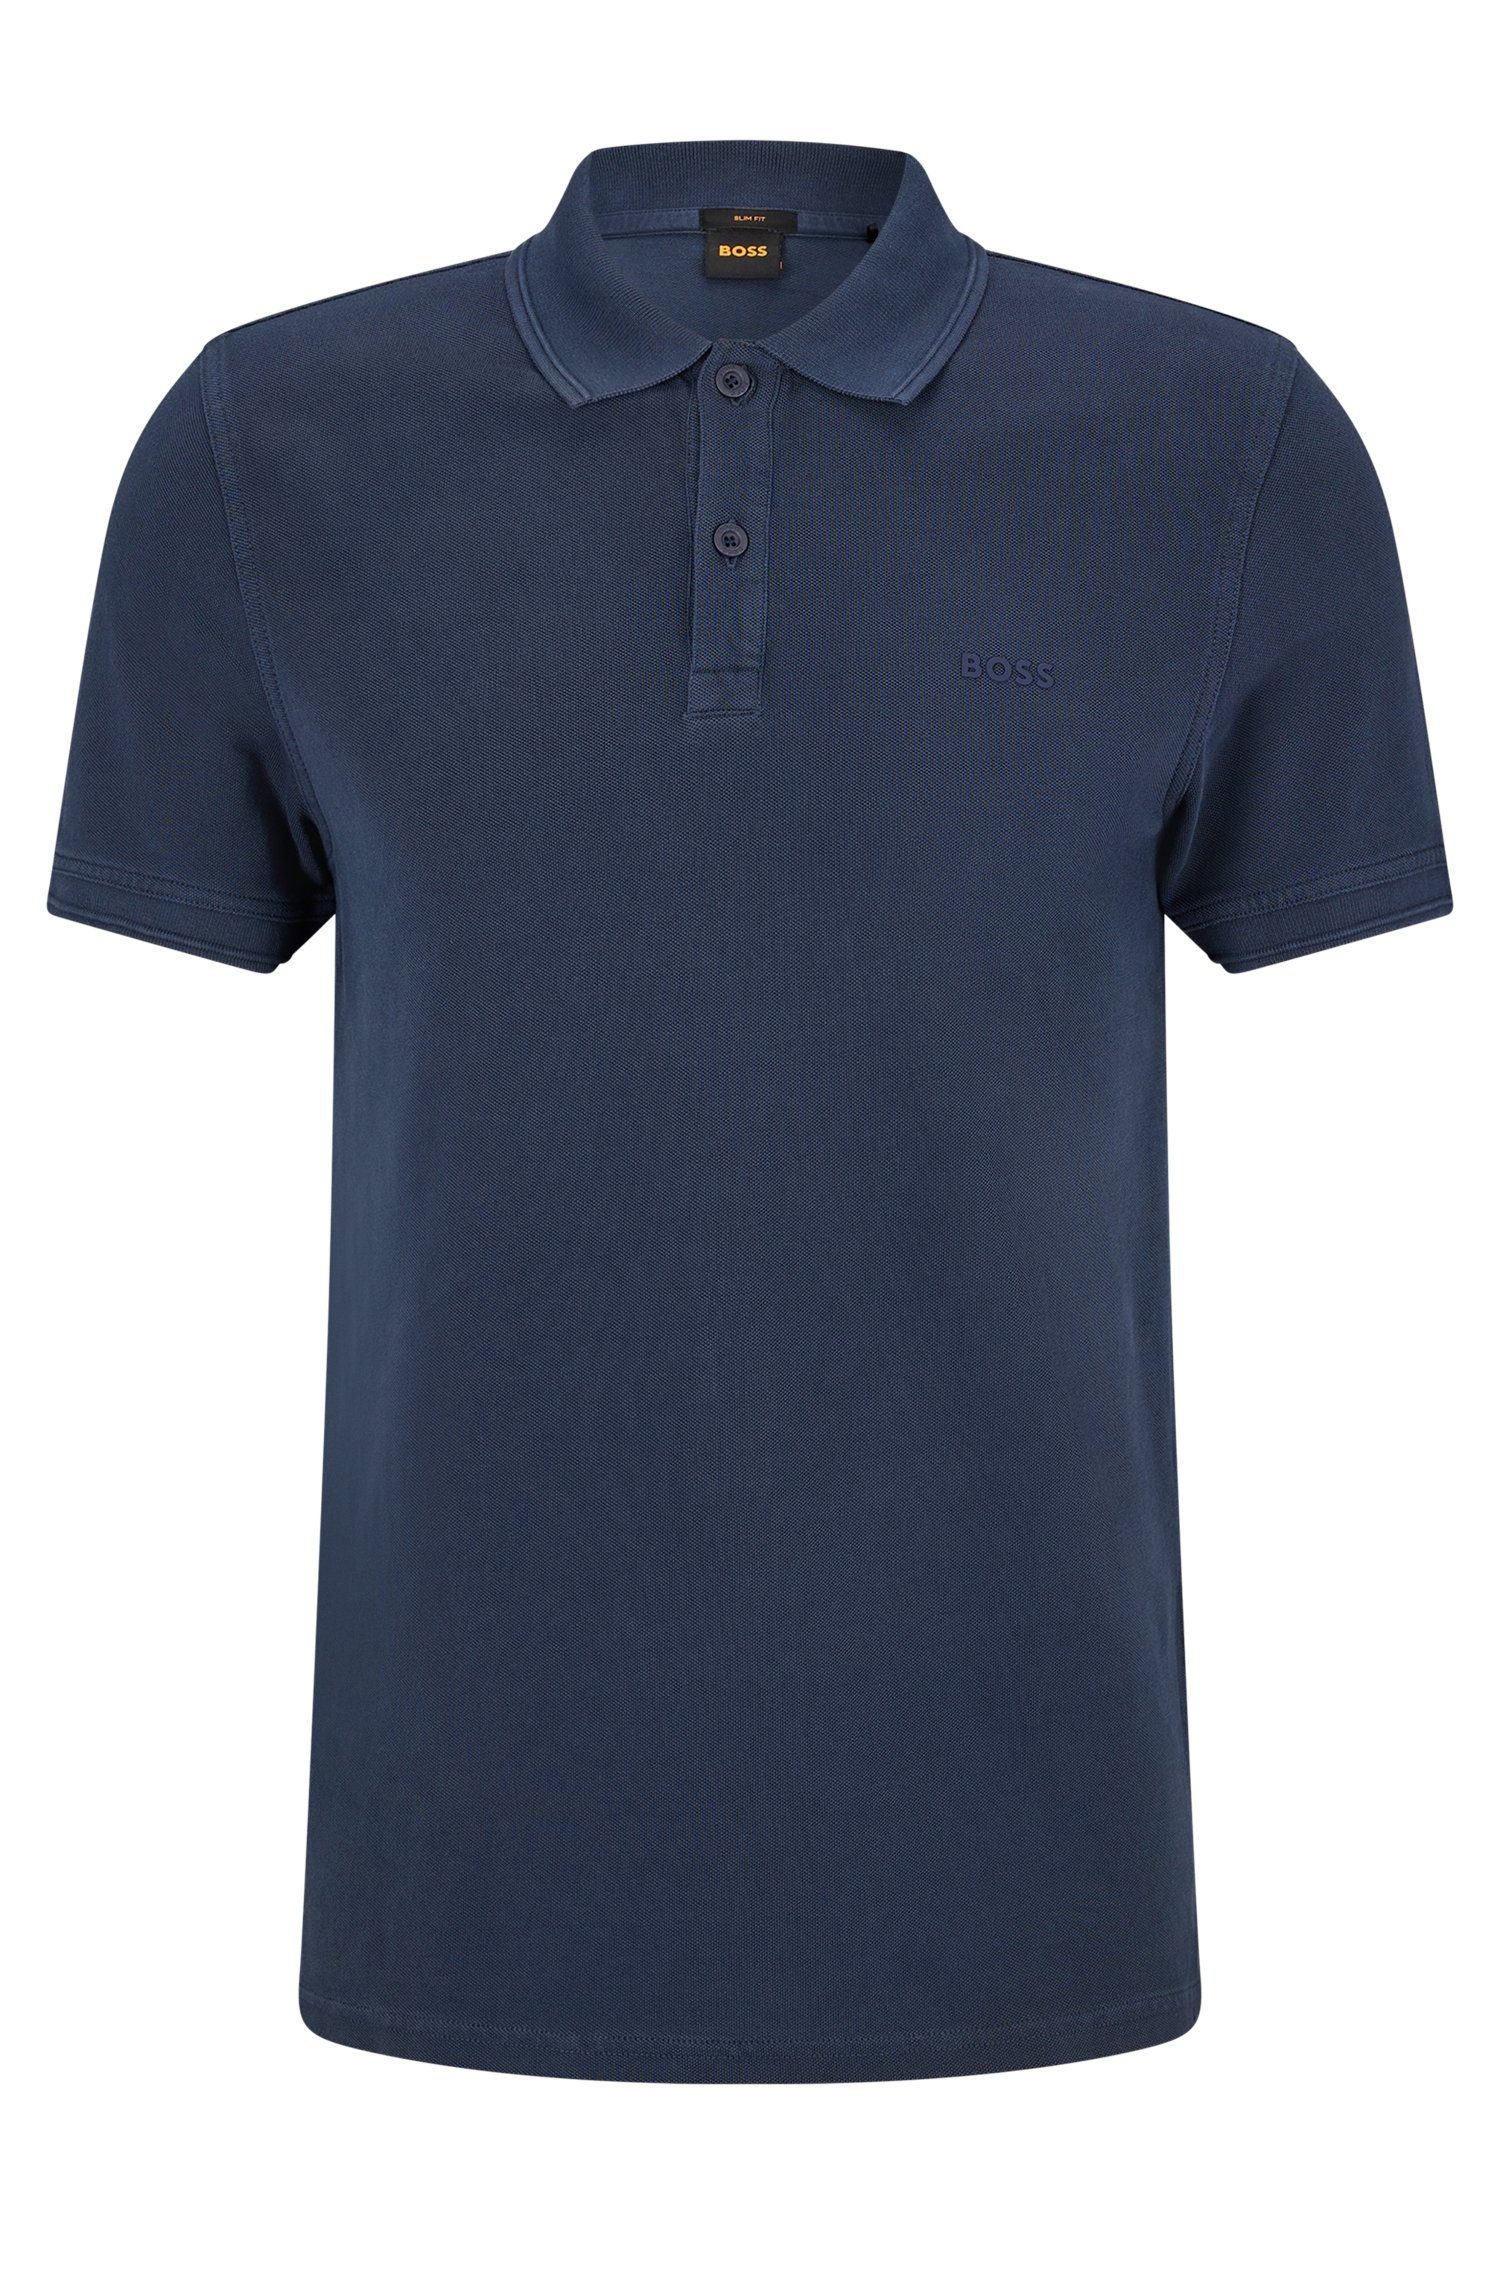 BOSS ORANGE Poloshirt Prime mit 10203439 auf dezentem dunkelblau der Logoschriftzug 01 Brust